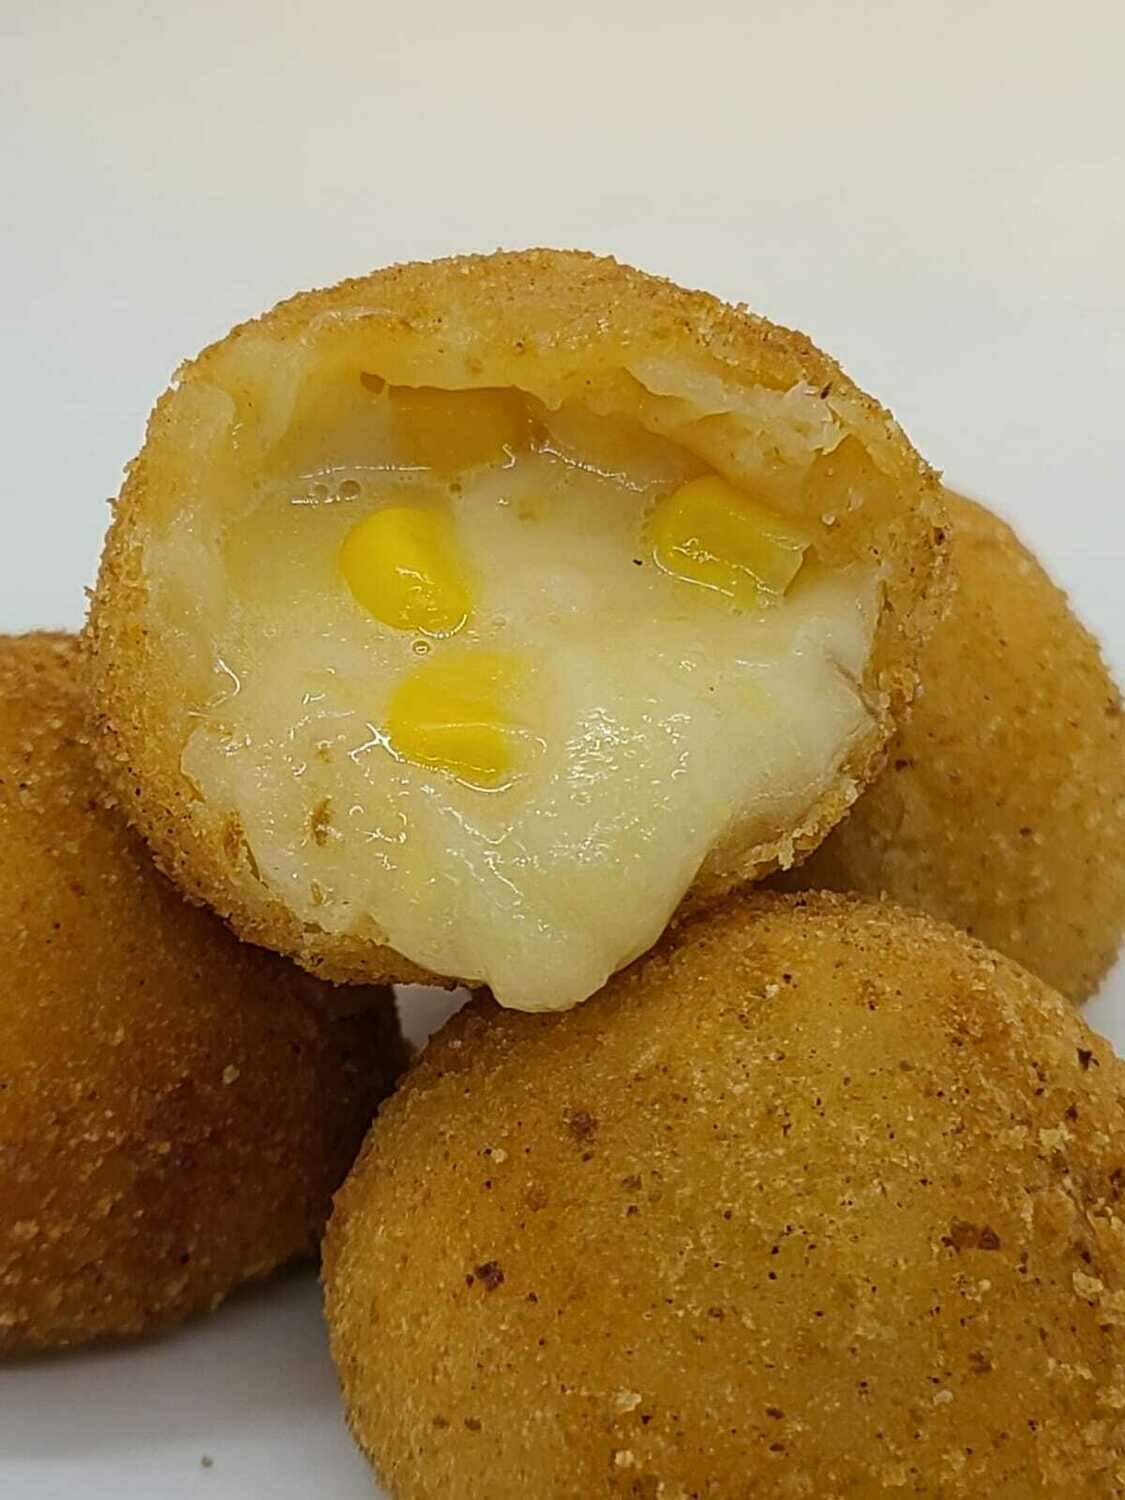 Bolinha de queijo com milho (Cheese and Corn Bites)